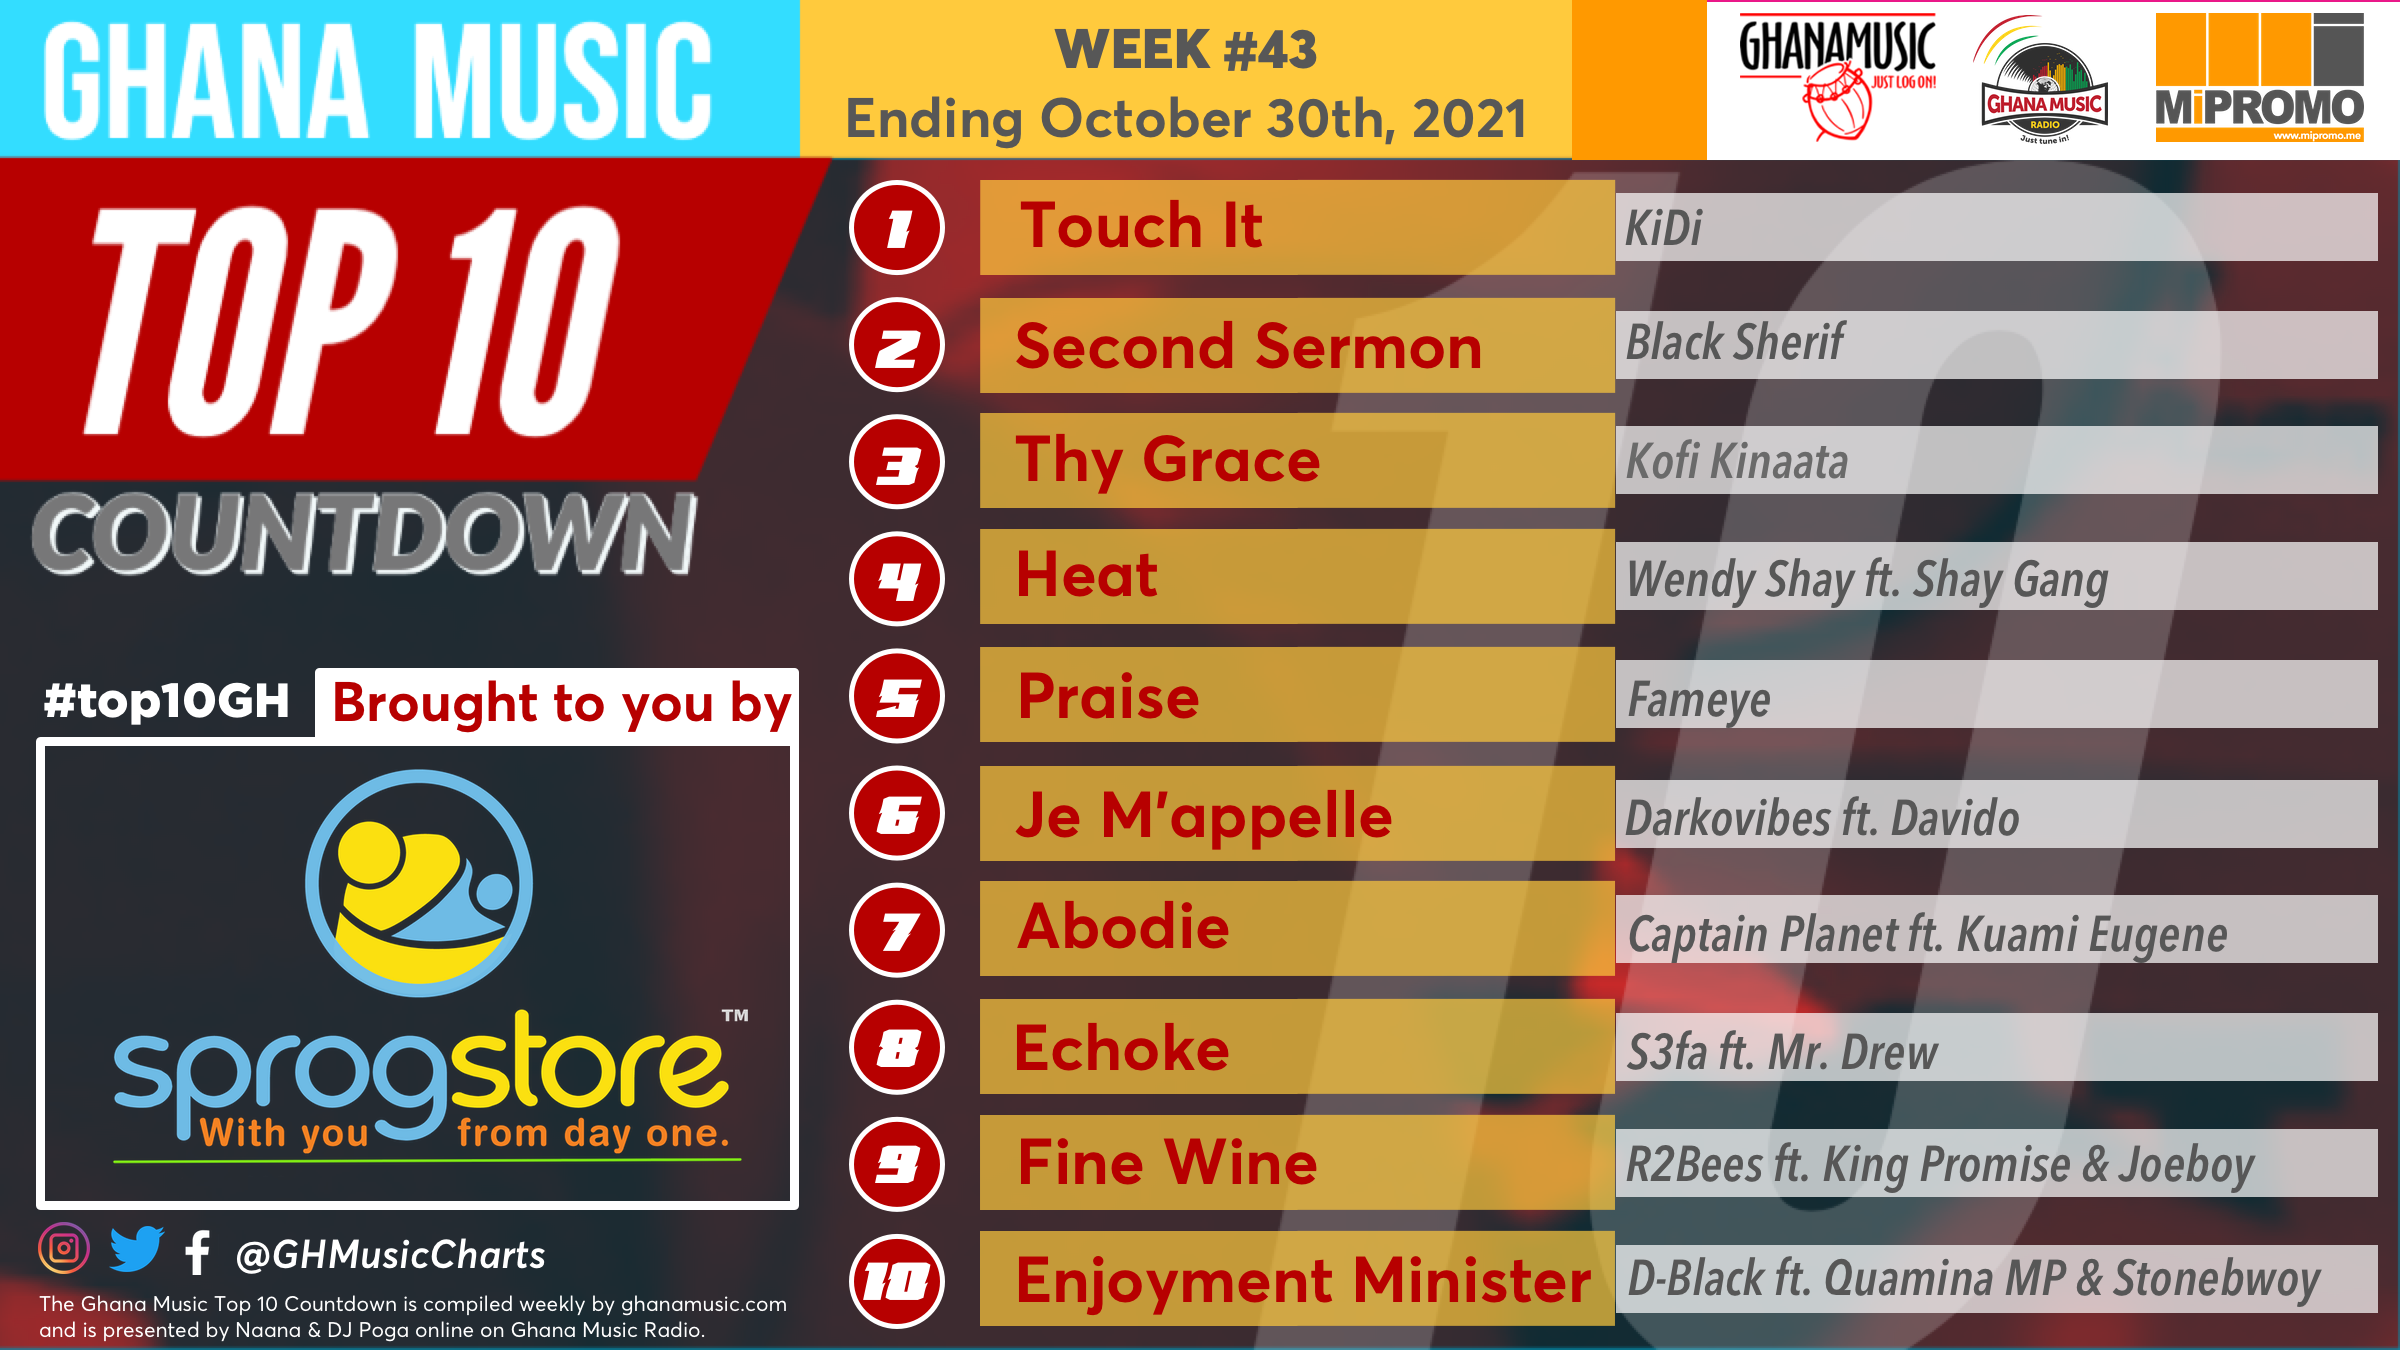 2021 Week 43: Ghana Music Top 10 Countdown